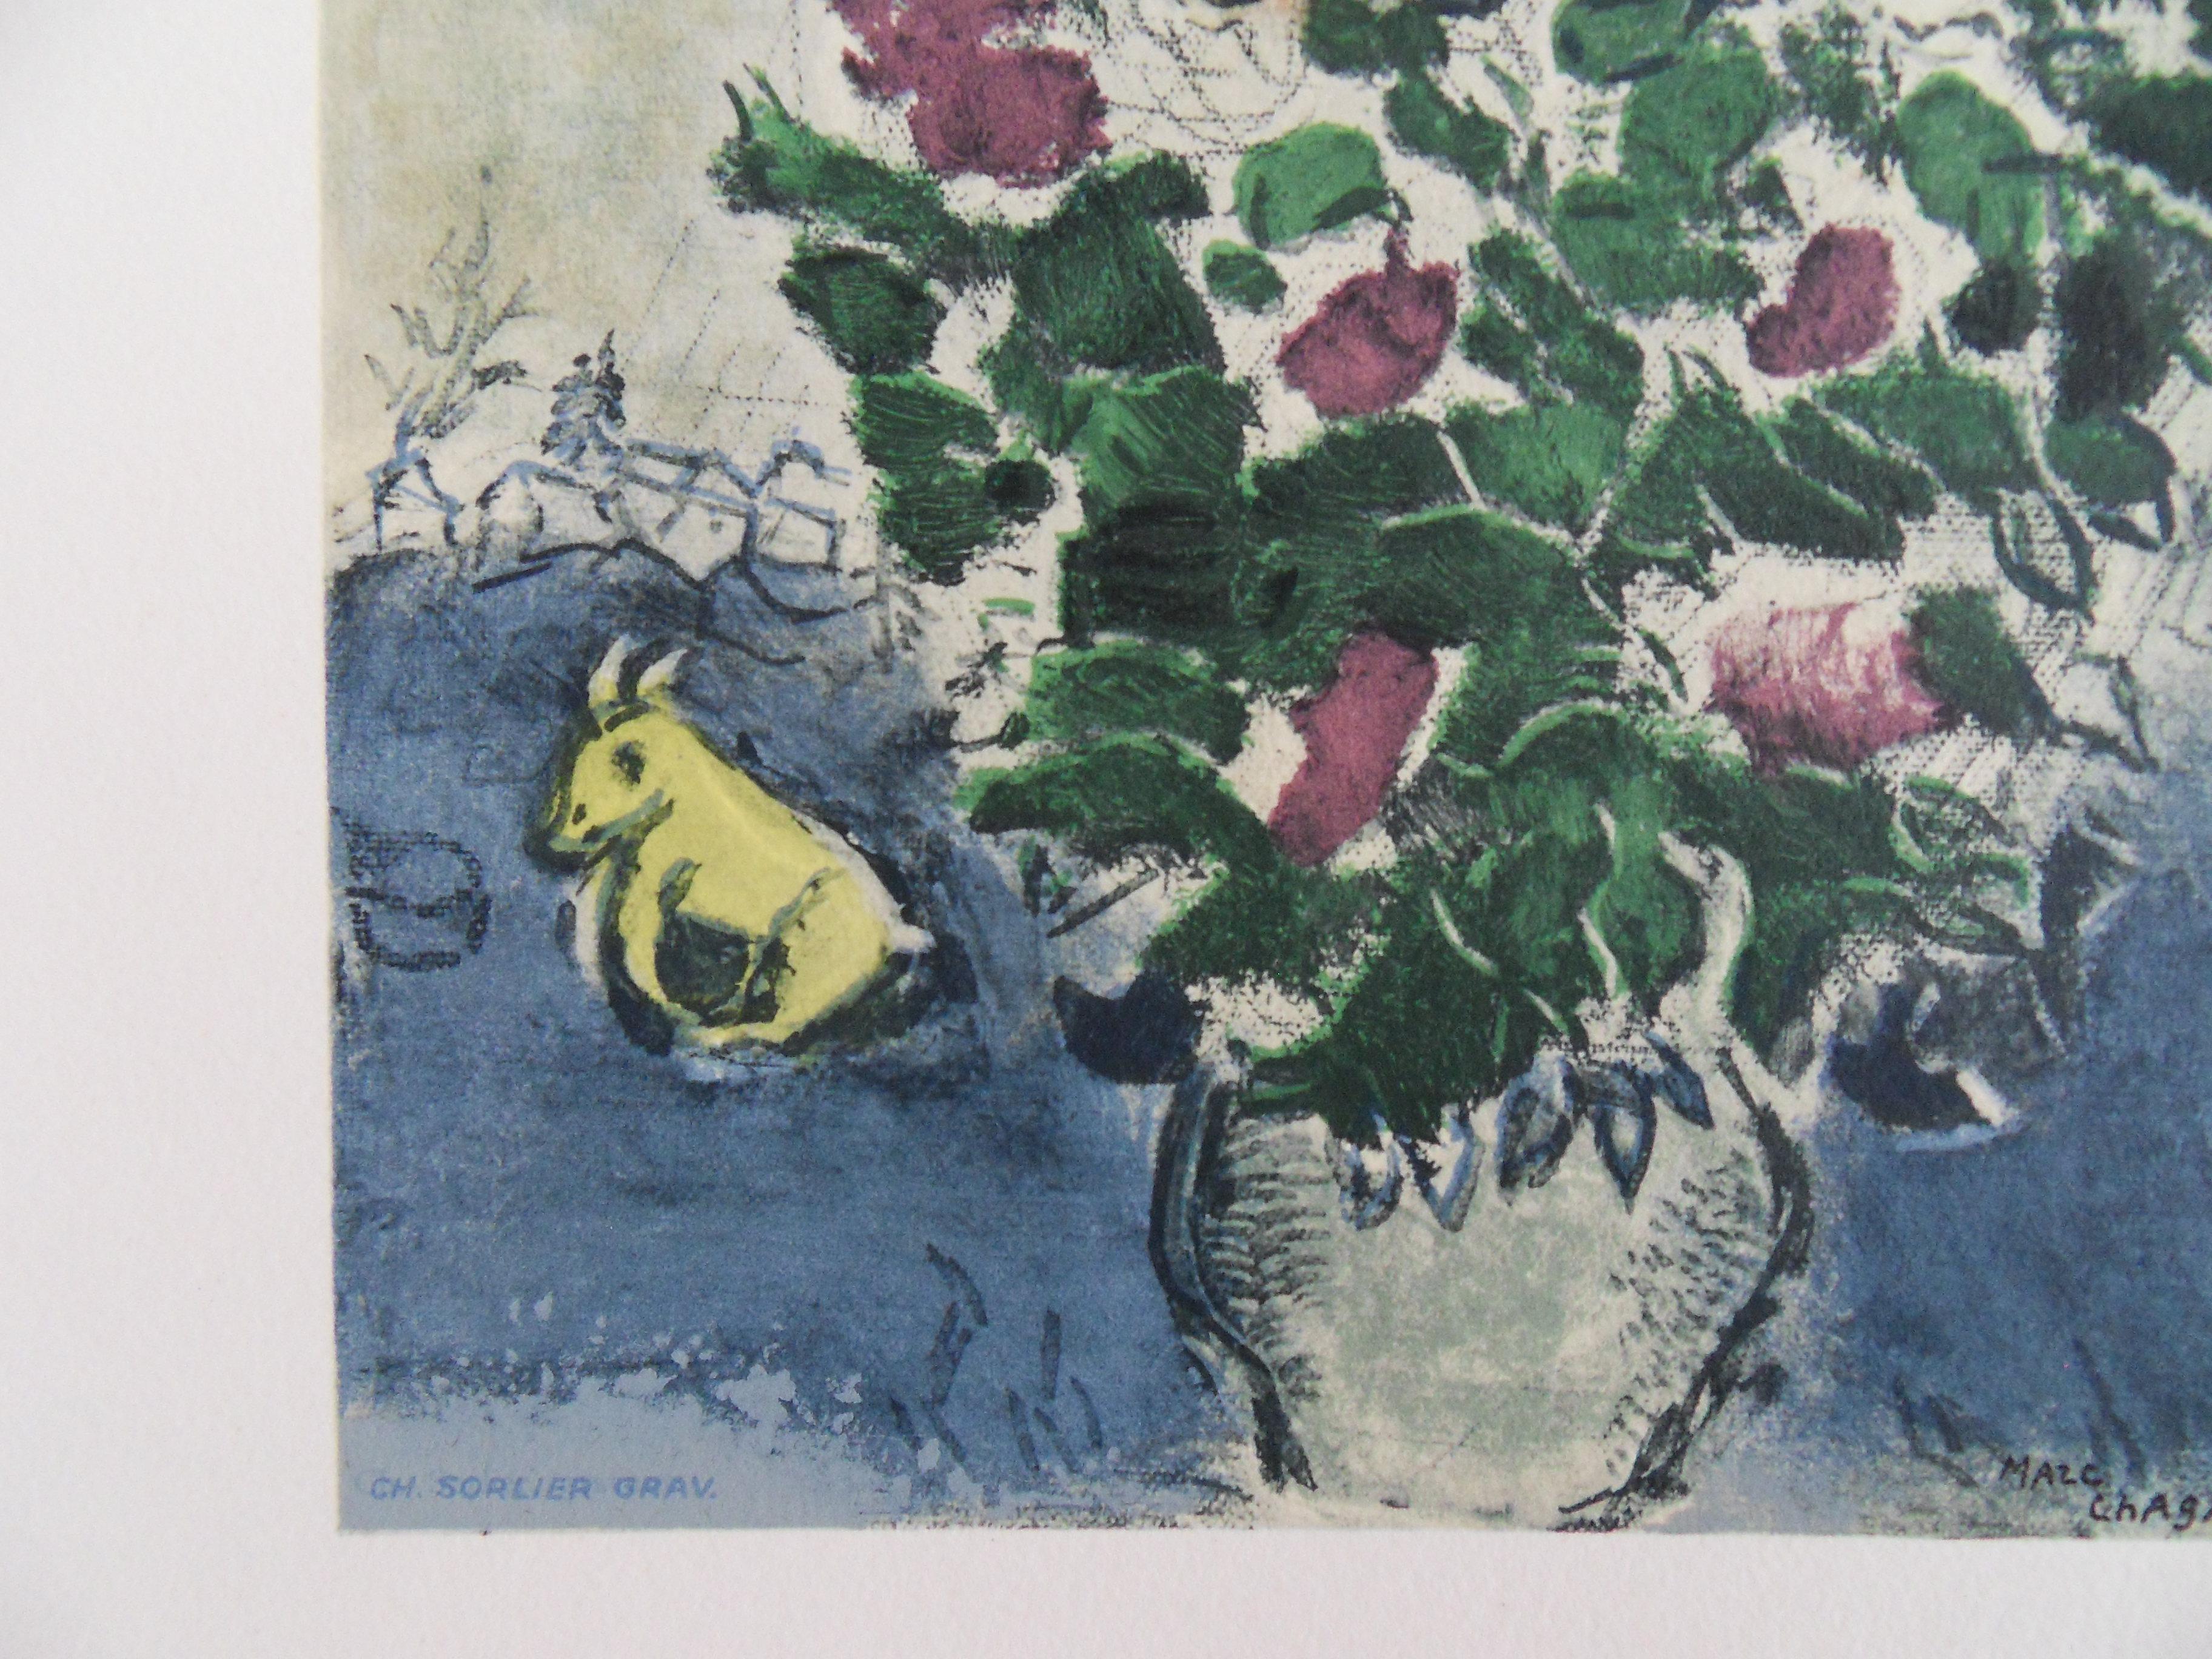 Marc CHAGALL
Bunter Blumenstrauß

Steinlithographie in Farben (Werkstatt Mourlot)
Gestochen von Sorlier unter der Aufsicht von Marc Chagall
Gedruckte Unterschrift auf der Platte
Auf Arches Vellum 38 x 28 cm (ca. 15 x 11 Zoll)

INFORMATIONEN :